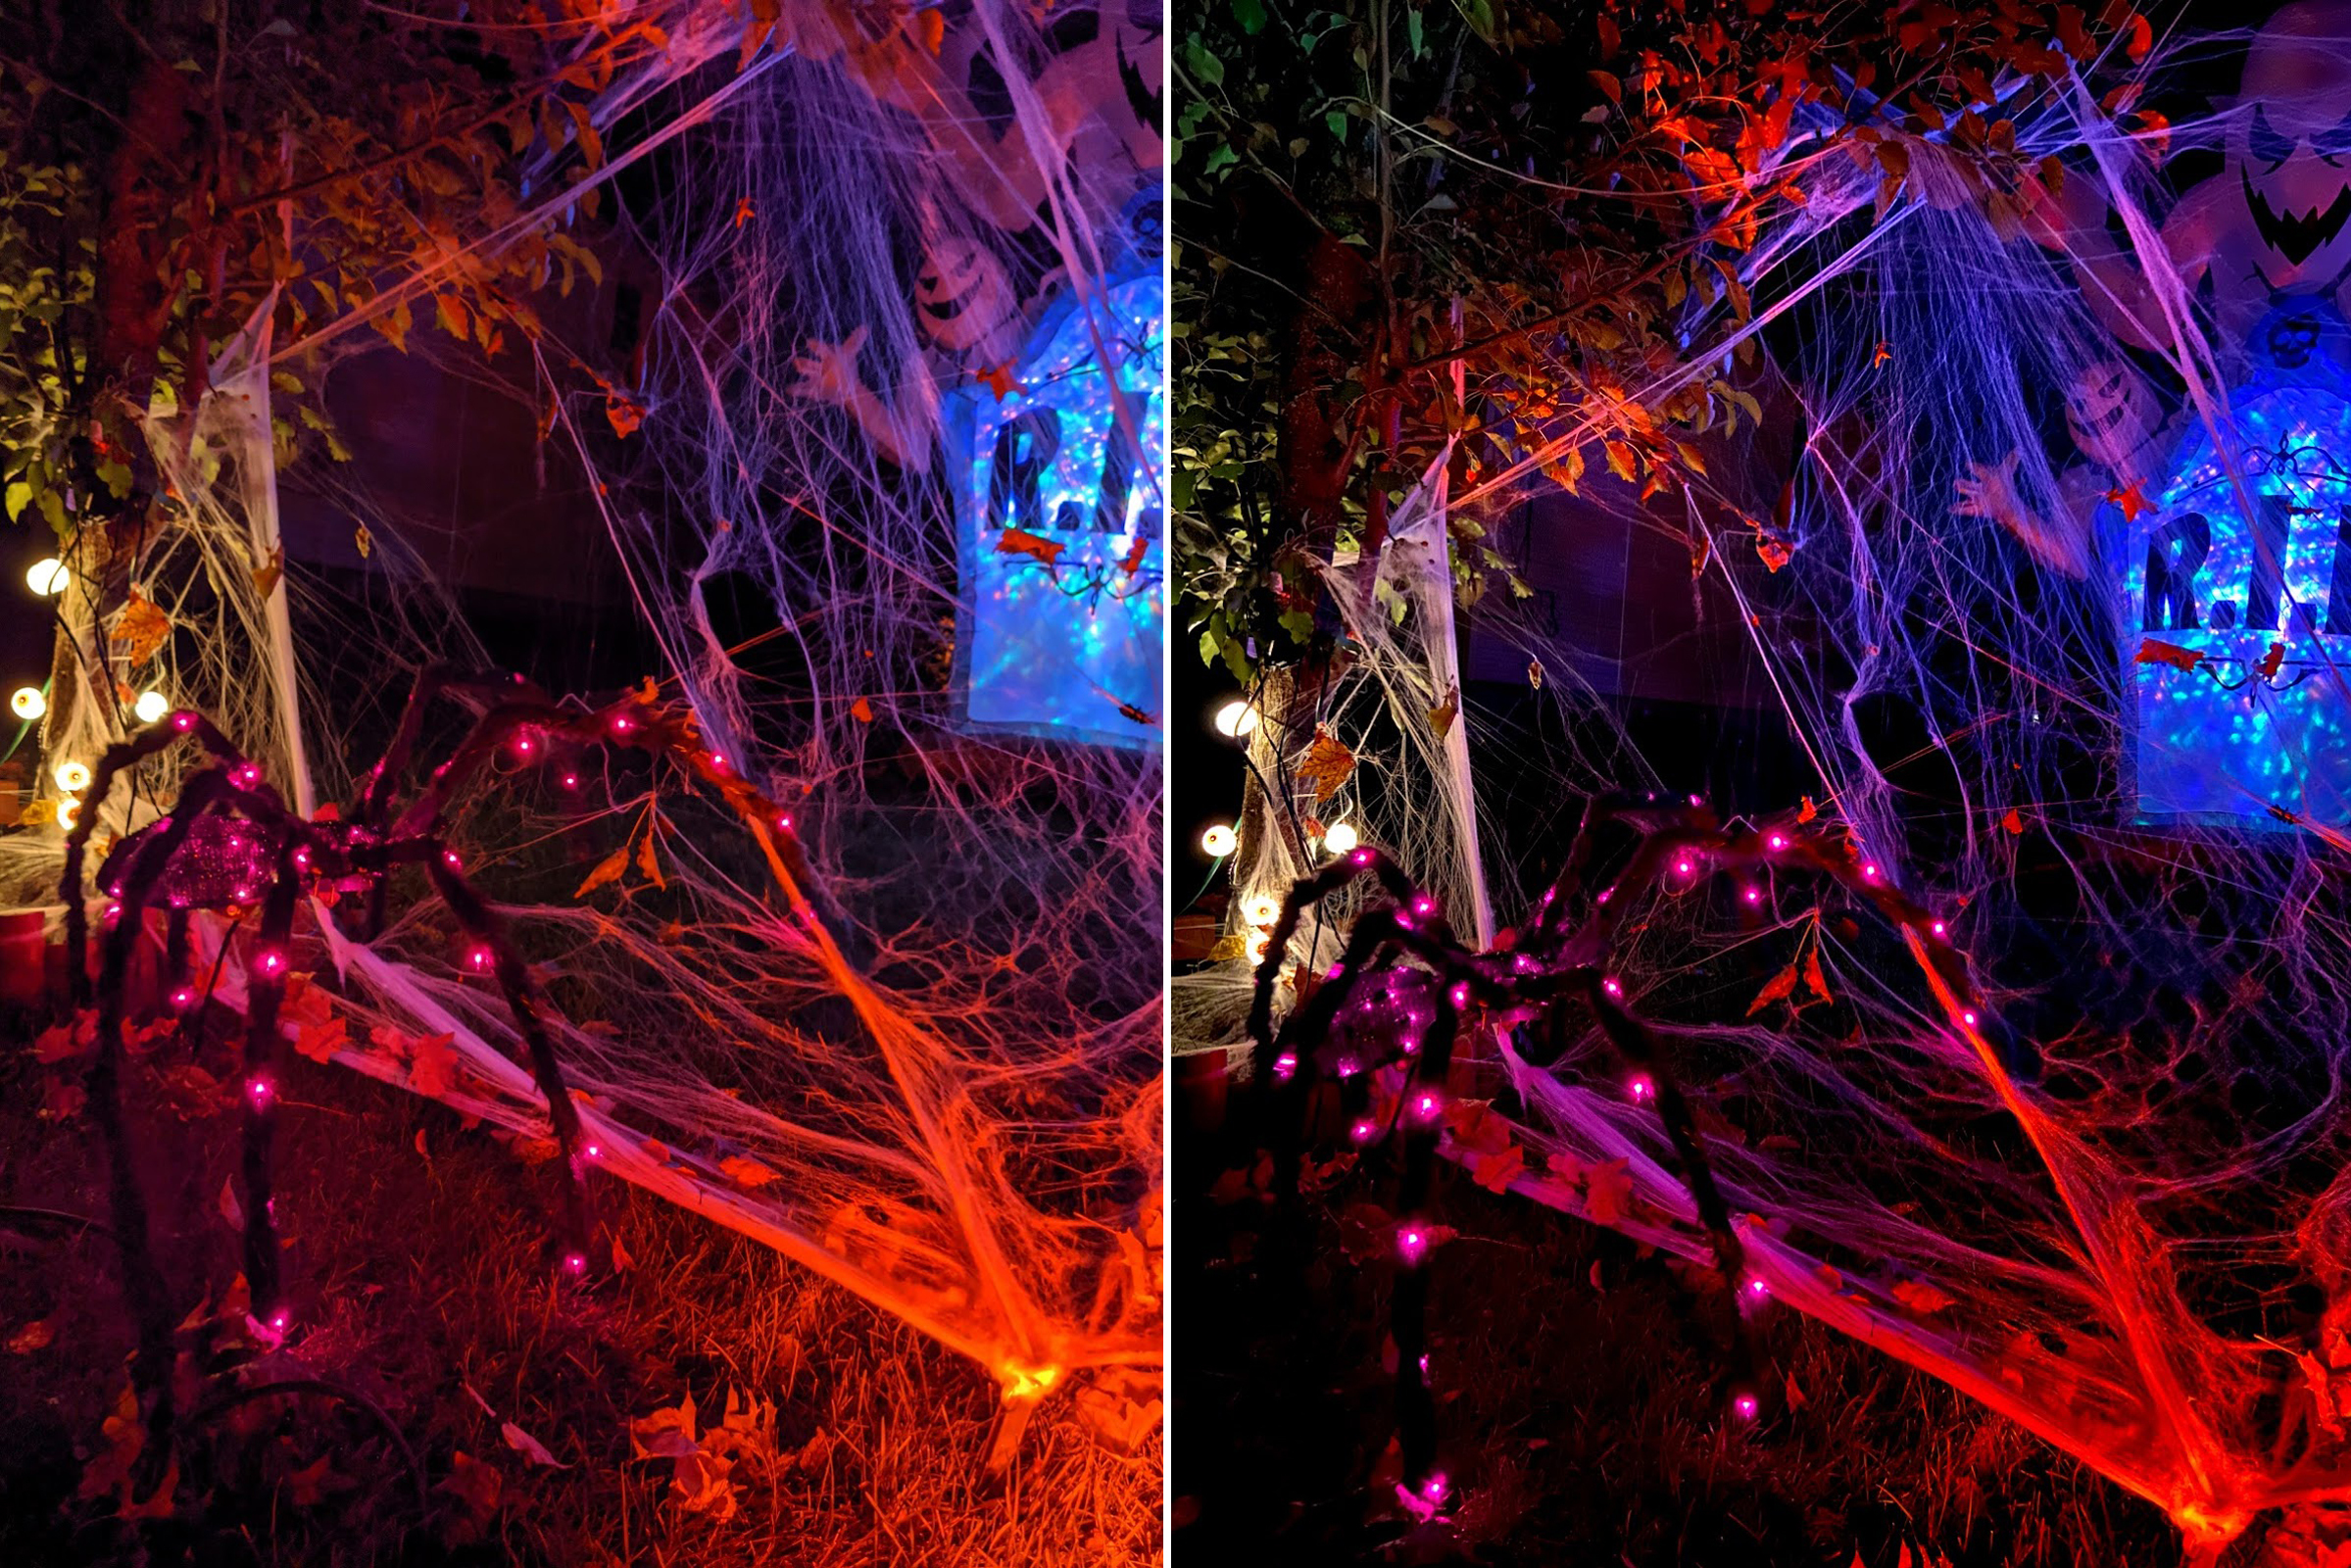 Fotos comparativas del modo nocturno del Pixel 4 (izquierda) y el iPhone 11 (derecha)